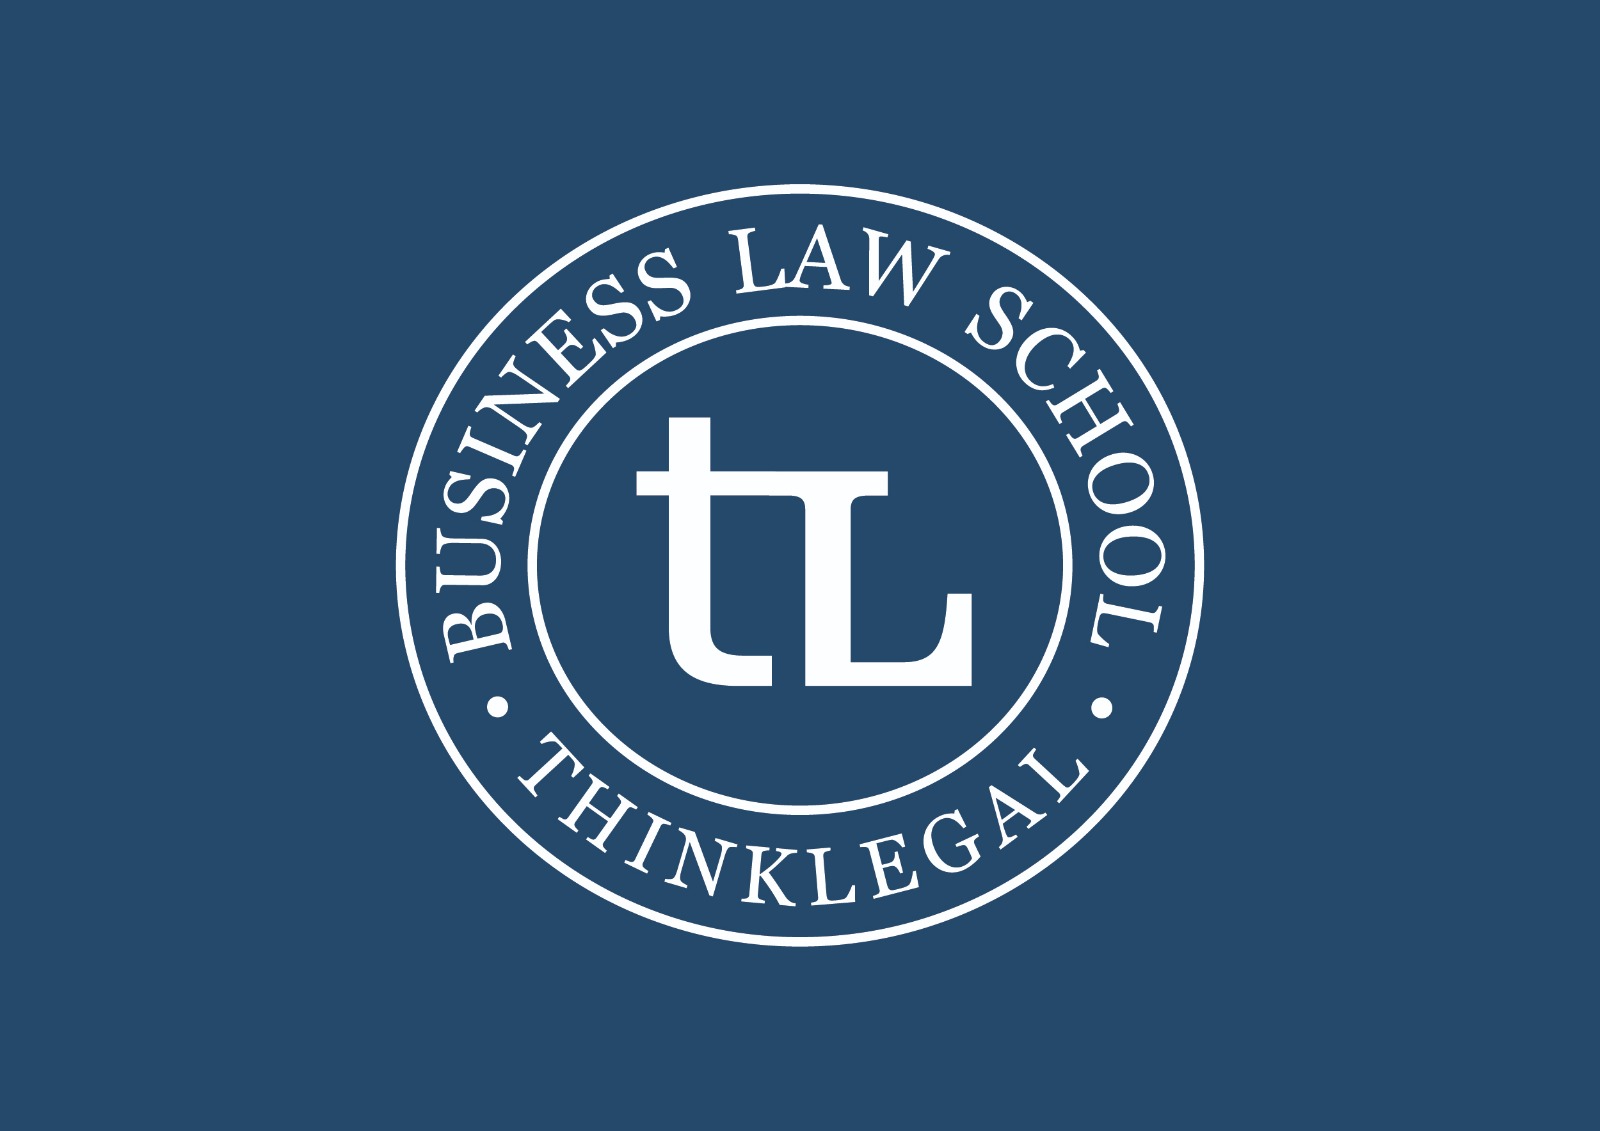 La prima Business Law School nel Metaverso